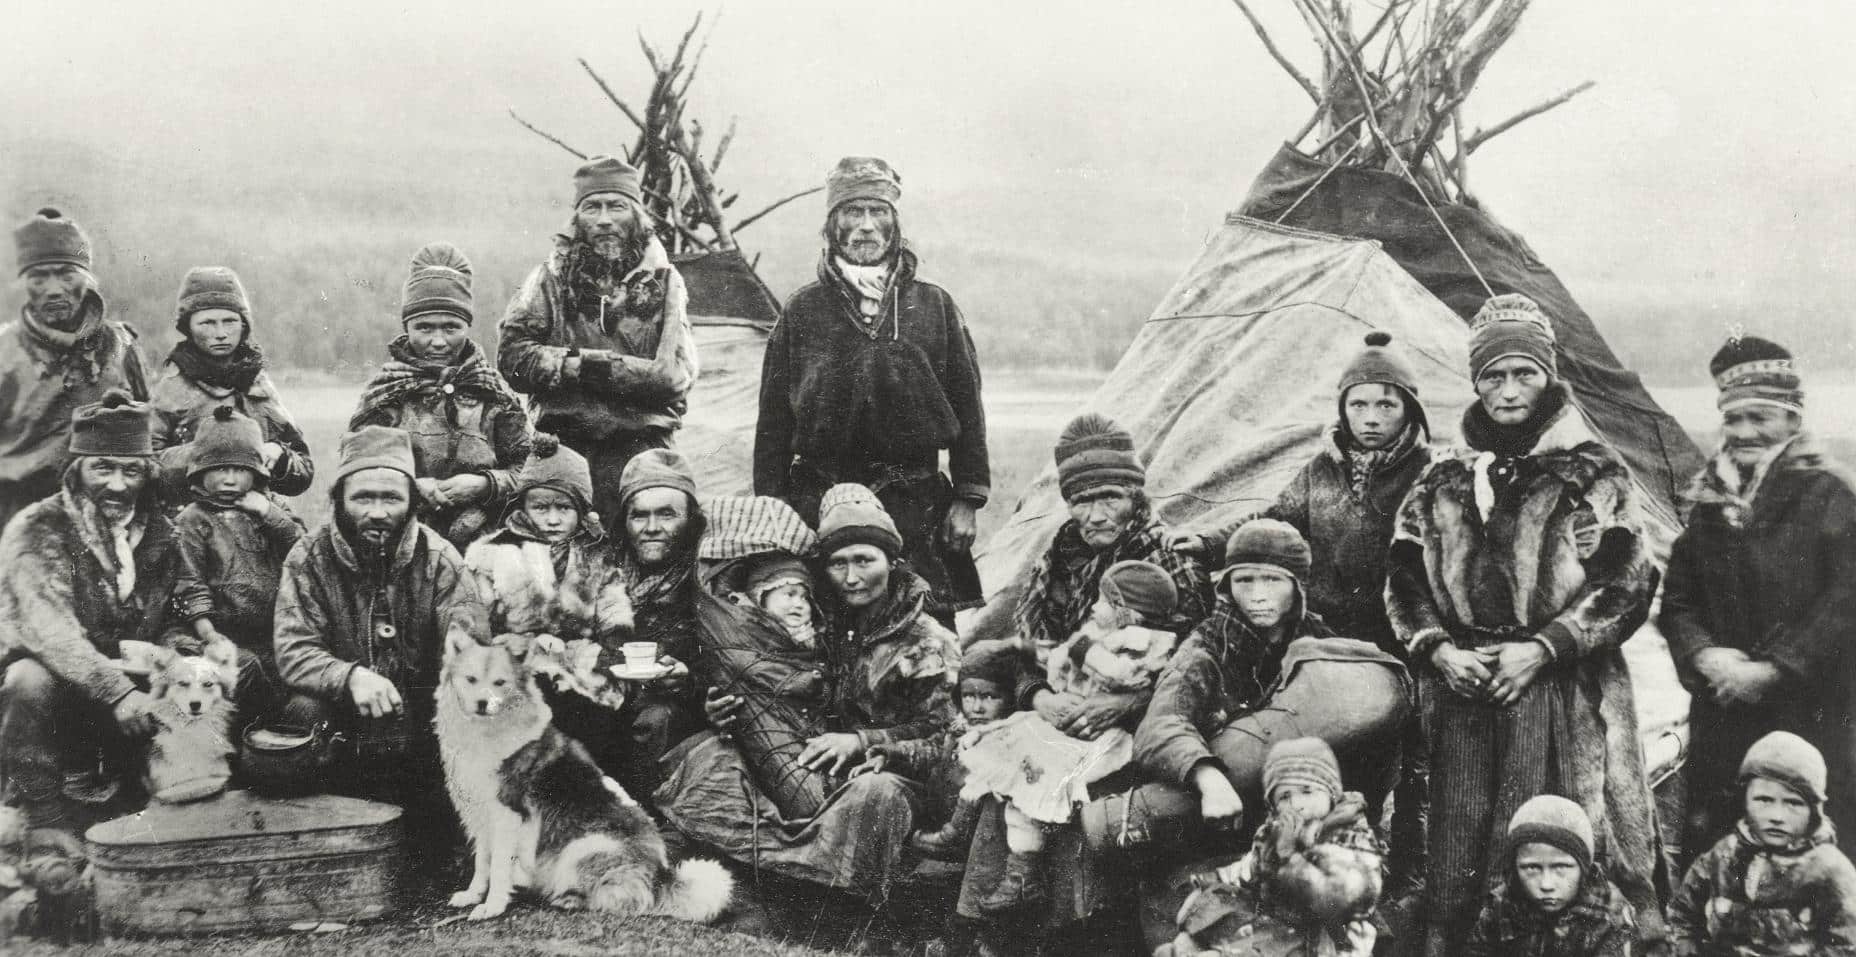 Photographie de Sami nomades prise entre 1900 et 1920